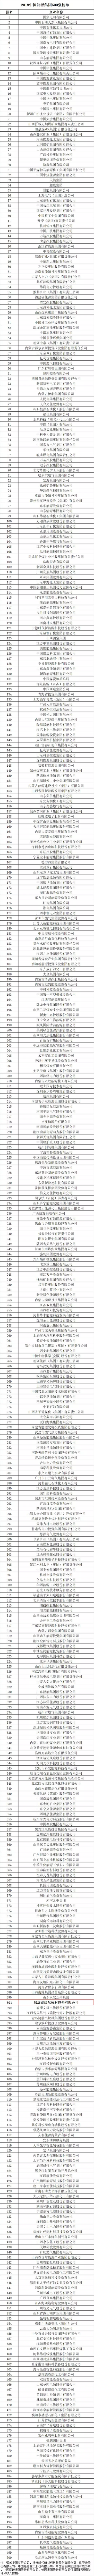 欧宝体育官方
荣登2018中国能源集团500强榜单3.jpg